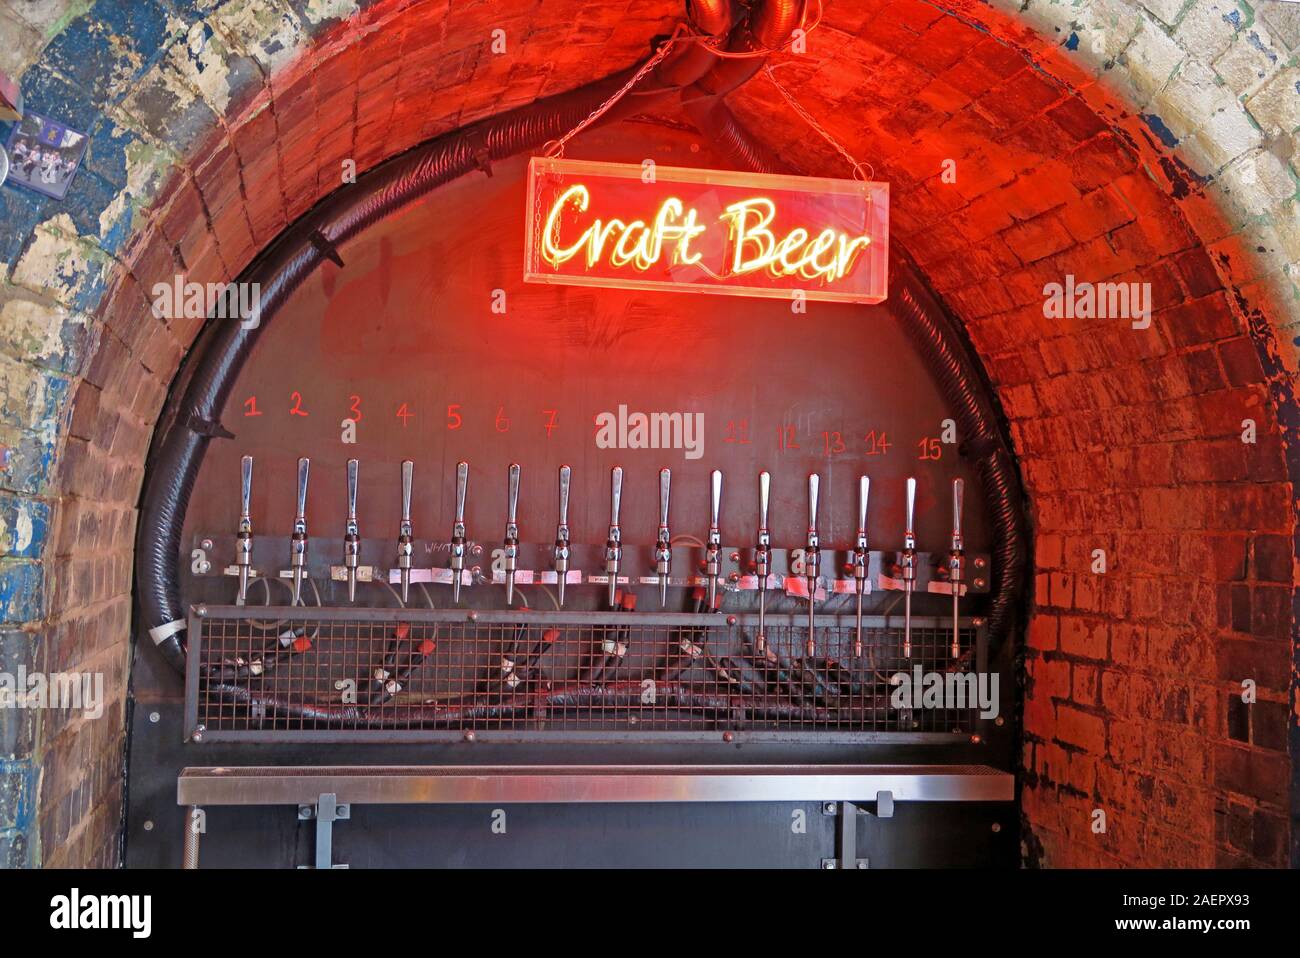 Panneau de bière artisanale au néon rouge, pub de bière artisanale, The Indian Brewery Company, Snowhill, Arch 16 Livery Street, Birmingham, West Midlands, Angleterre, Royaume-Uni, B3 1EU Banque D'Images